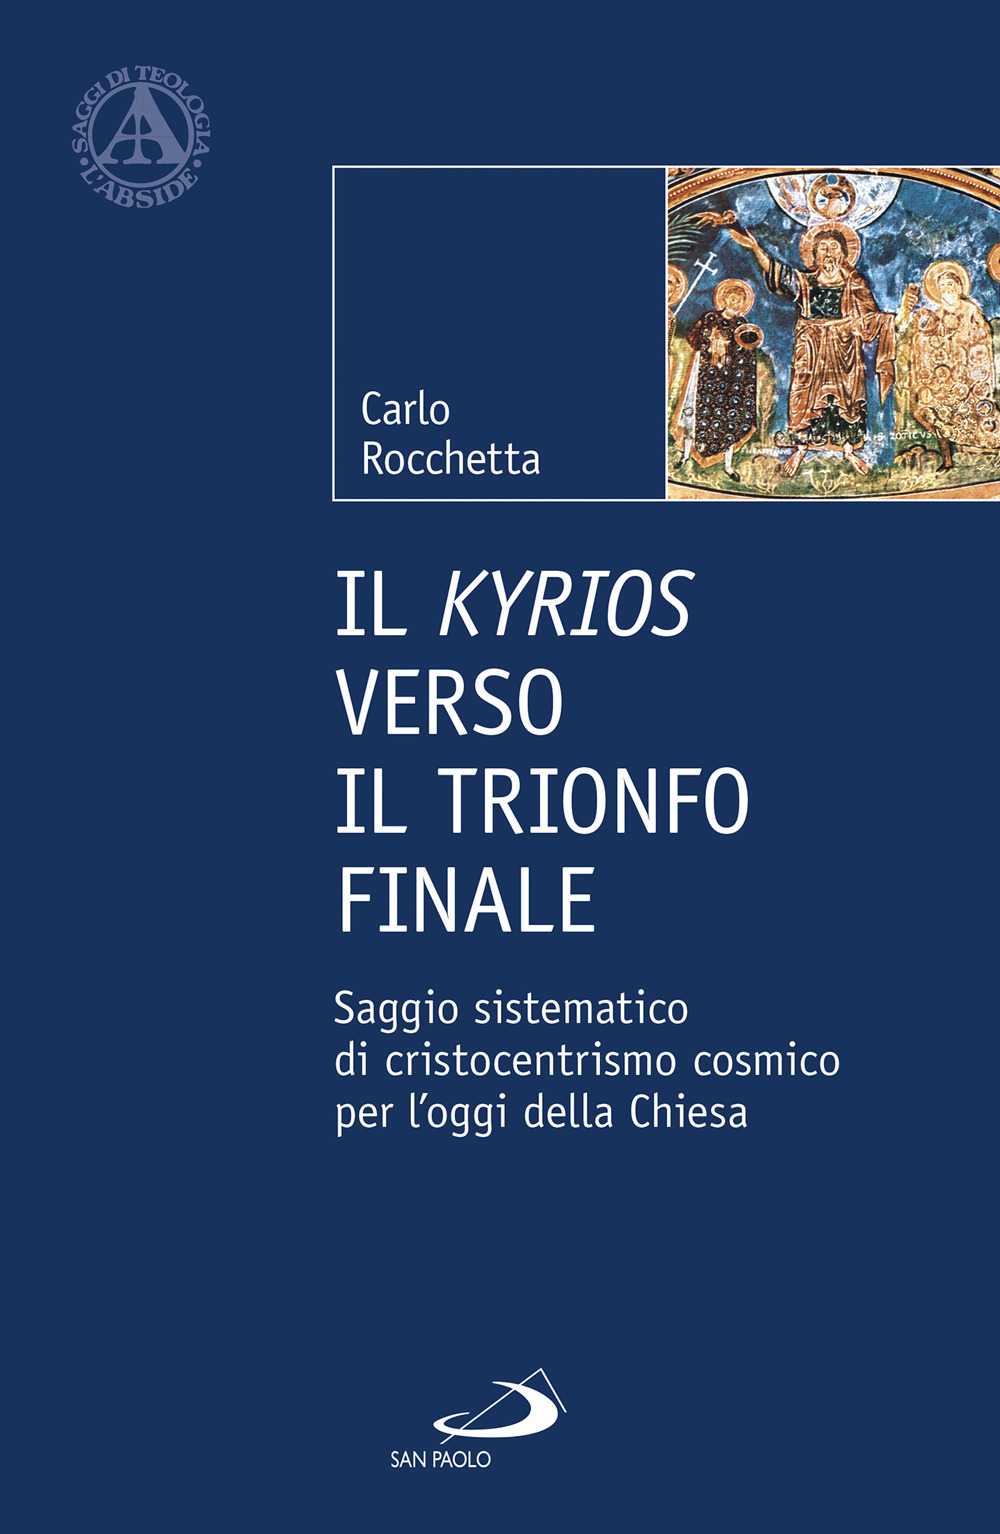 Image of Il Kyrios verso il trionfo finale. Saggio sistematico di cristocentrismo cosmico per l'oggi della Chiesa